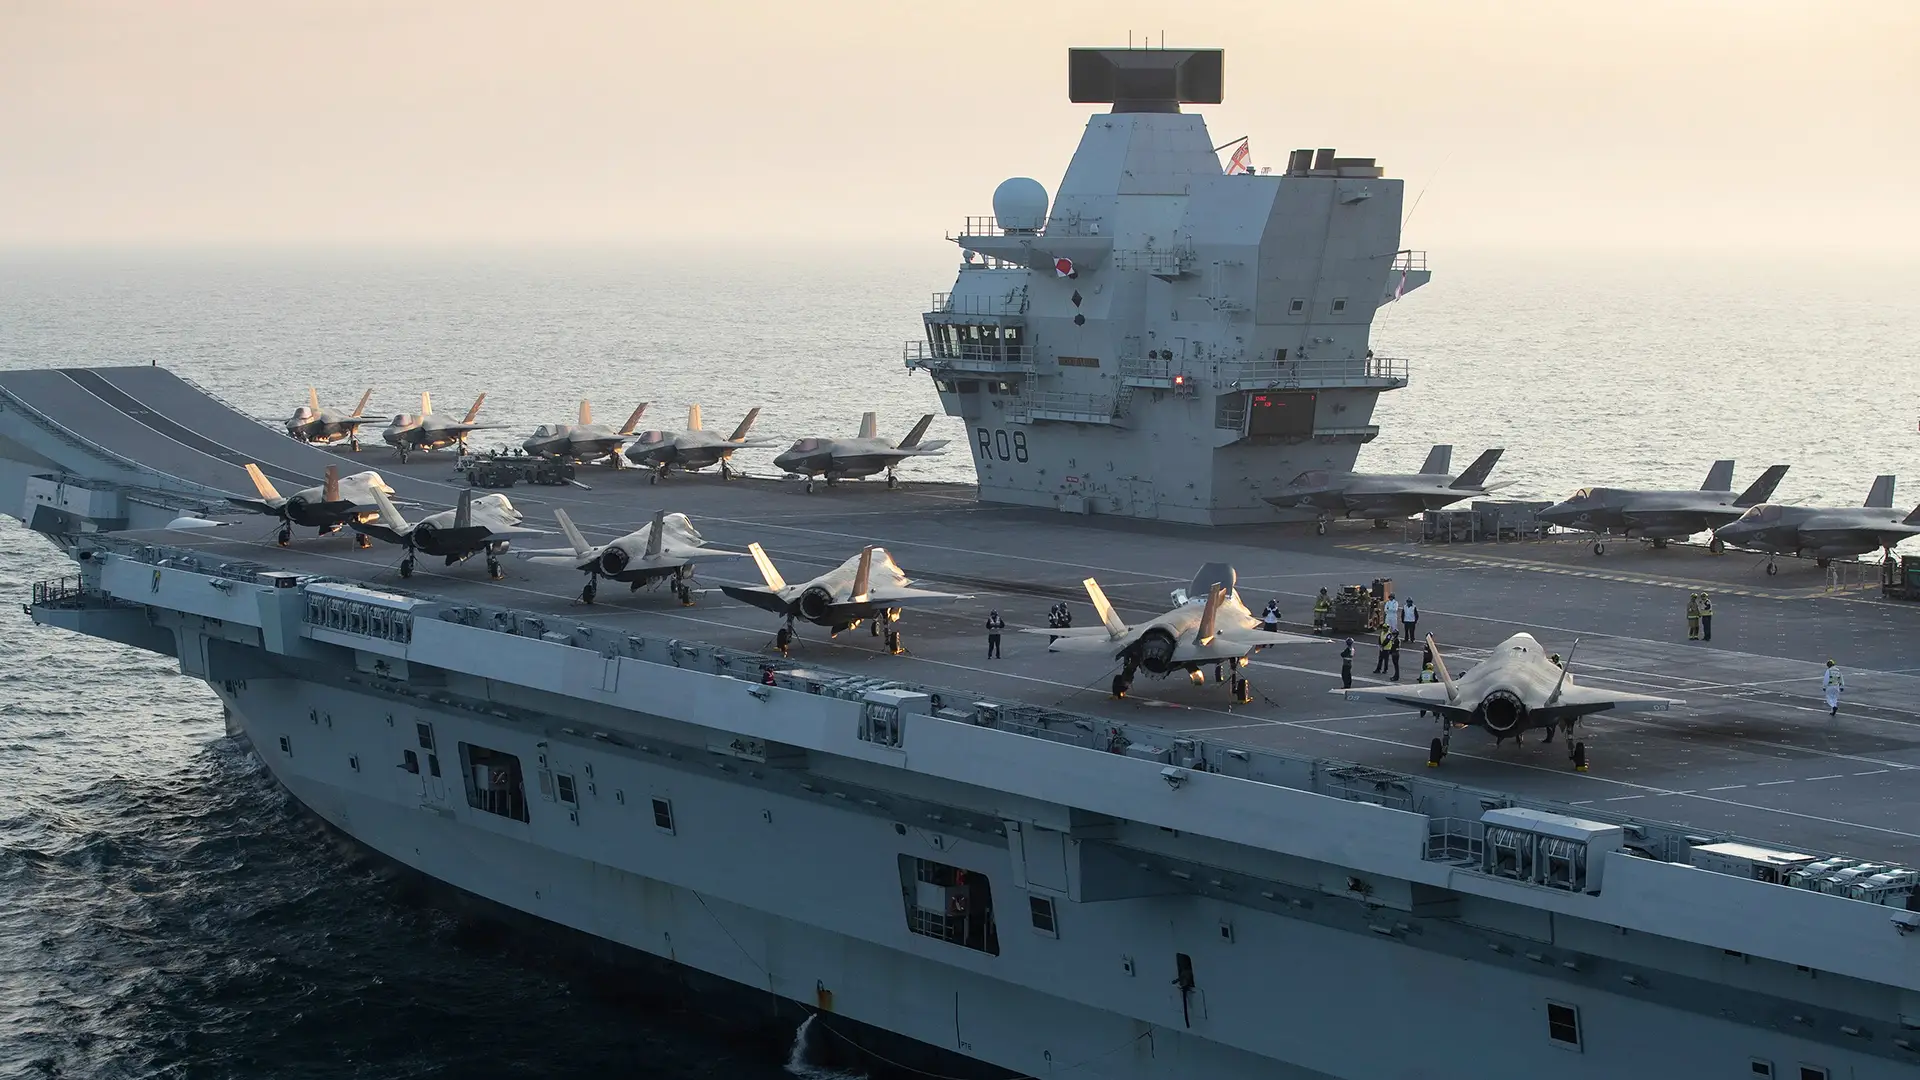 Królewska Marynarka Wojenna chce wyposażyć lotniskowiec Queen Elizabeth w katapulty i drony wykańczające powietrze